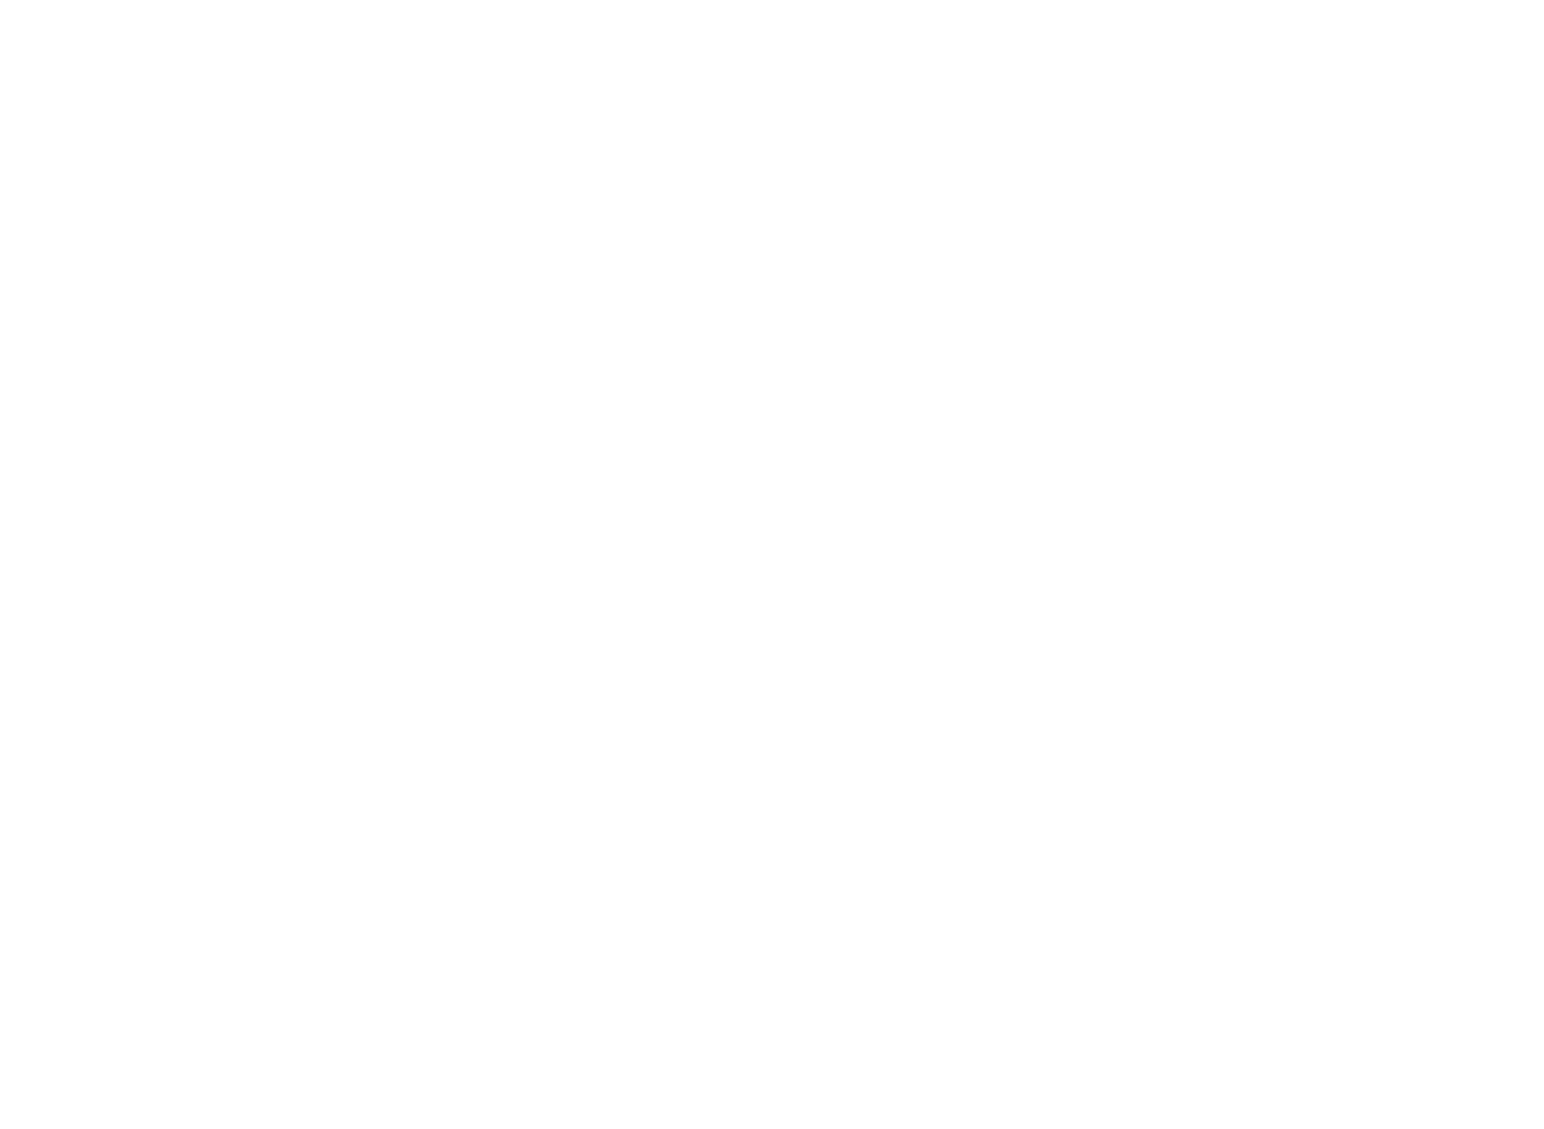 UmweltBank logo large for dark backgrounds (transparent PNG)